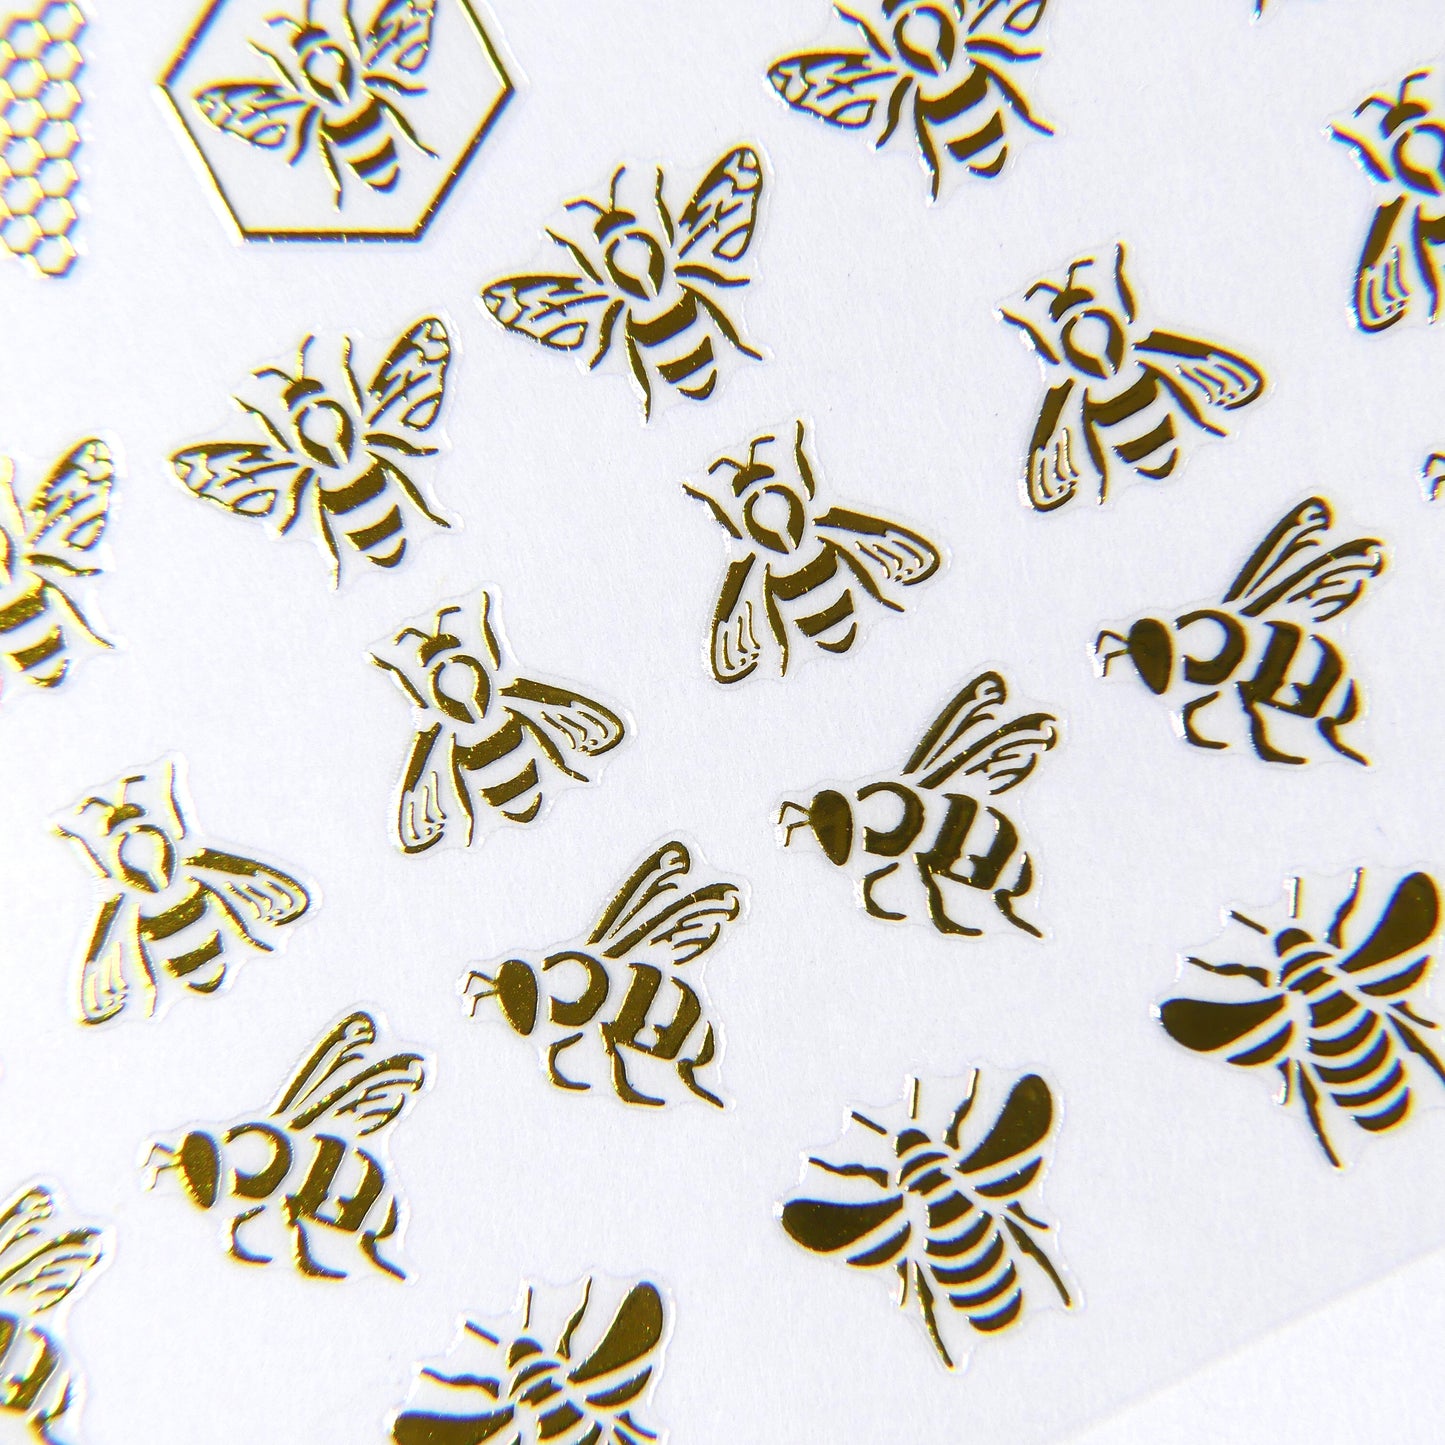 Gold Bees Sticker #2 - My Little Nail Art Shop